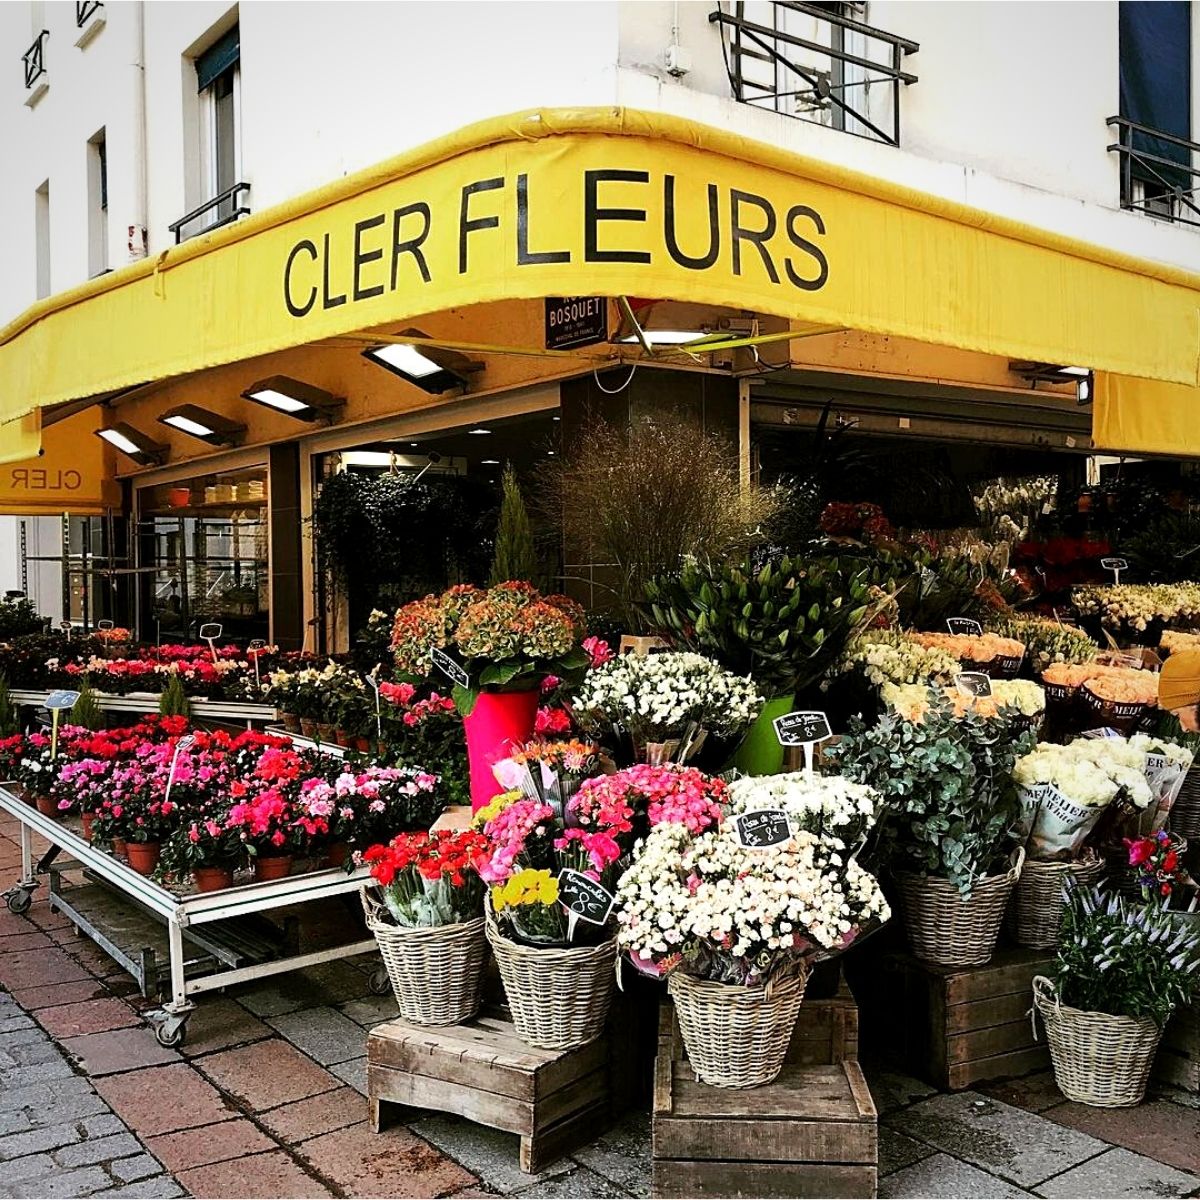 Flower Shops of Paris